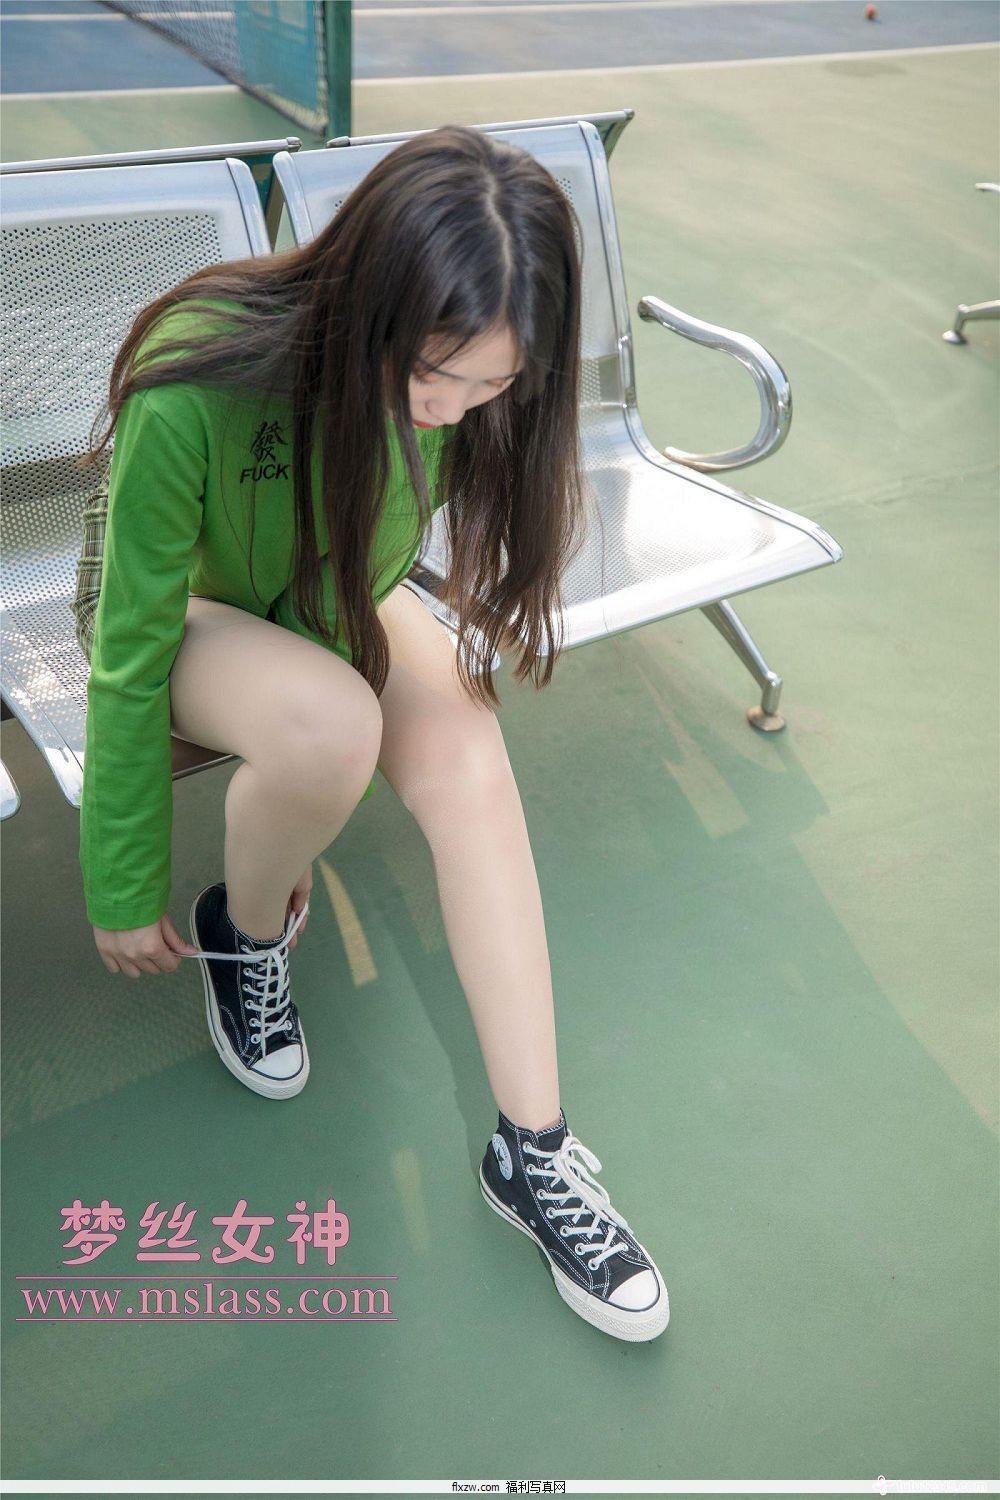 梦丝女神MSLASS - 香萱 网球少女(14)